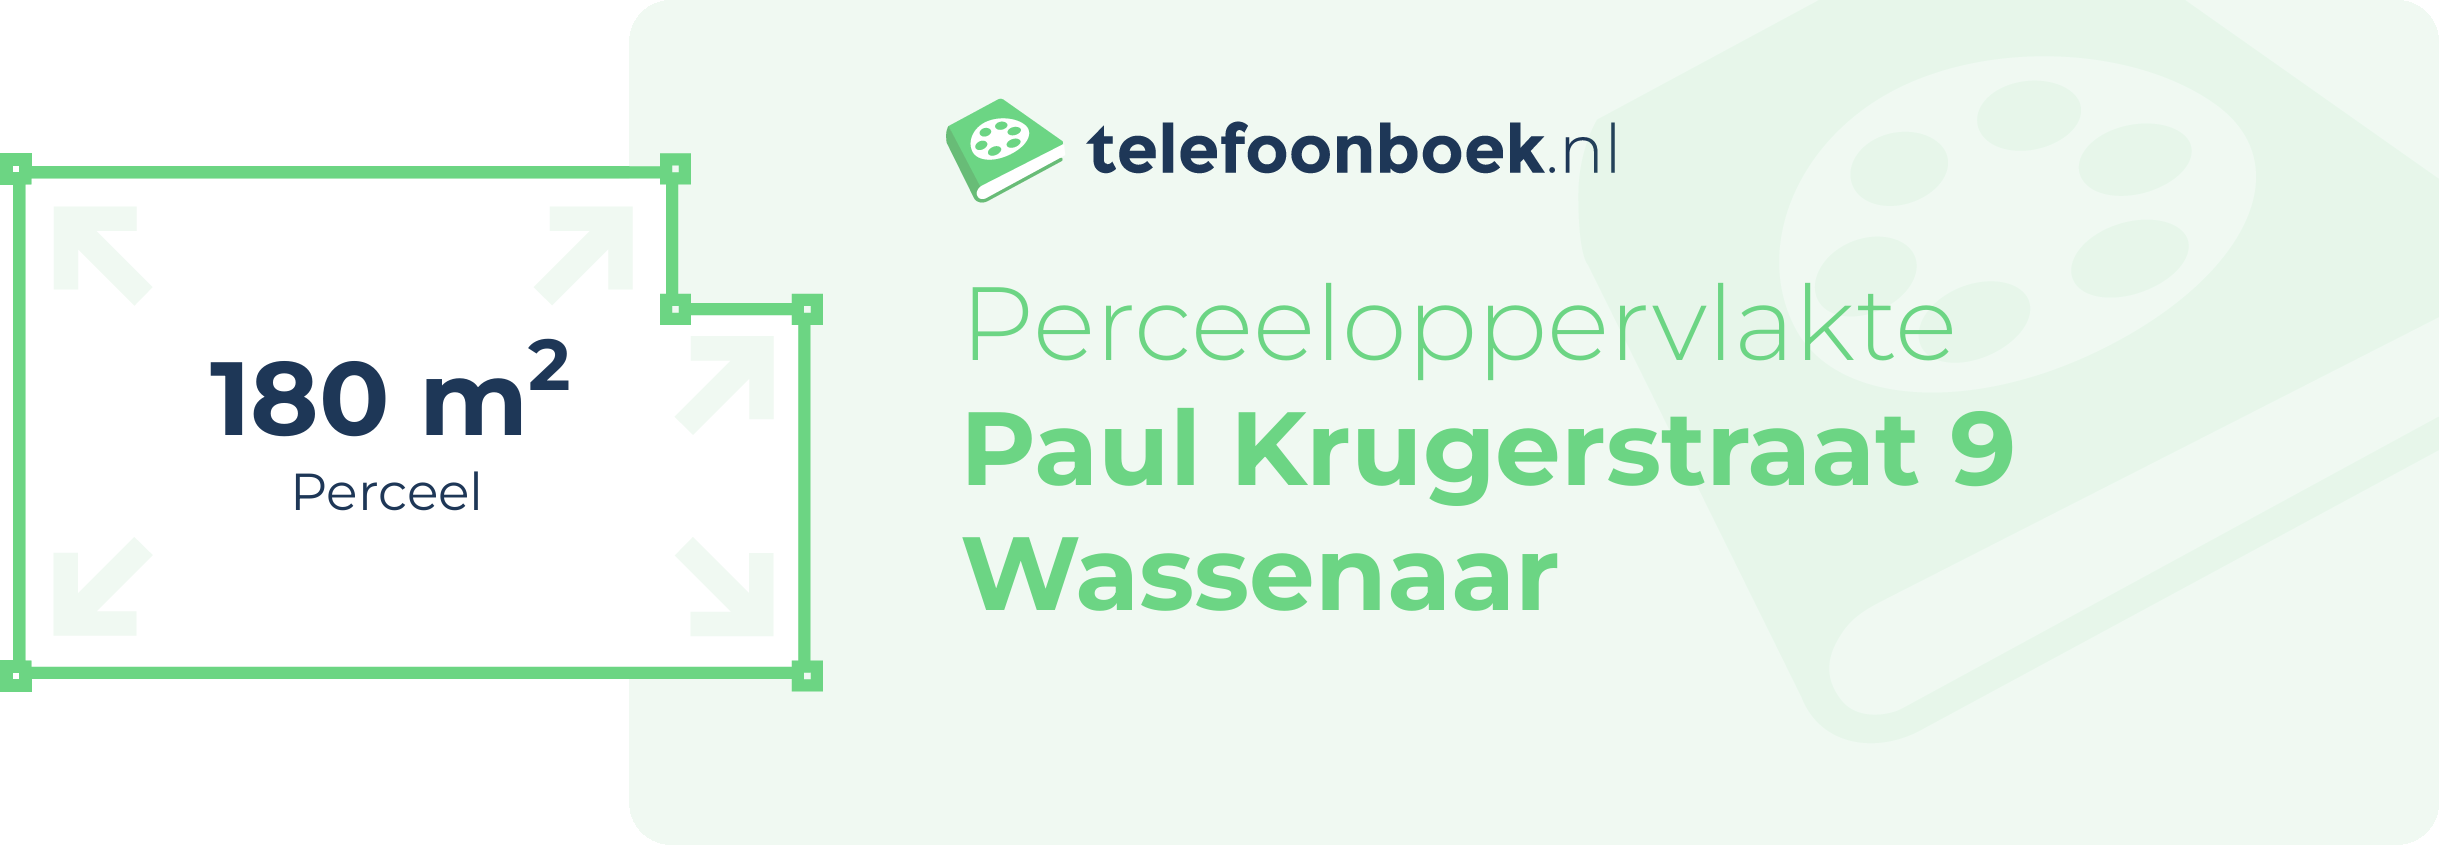 Perceeloppervlakte Paul Krugerstraat 9 Wassenaar